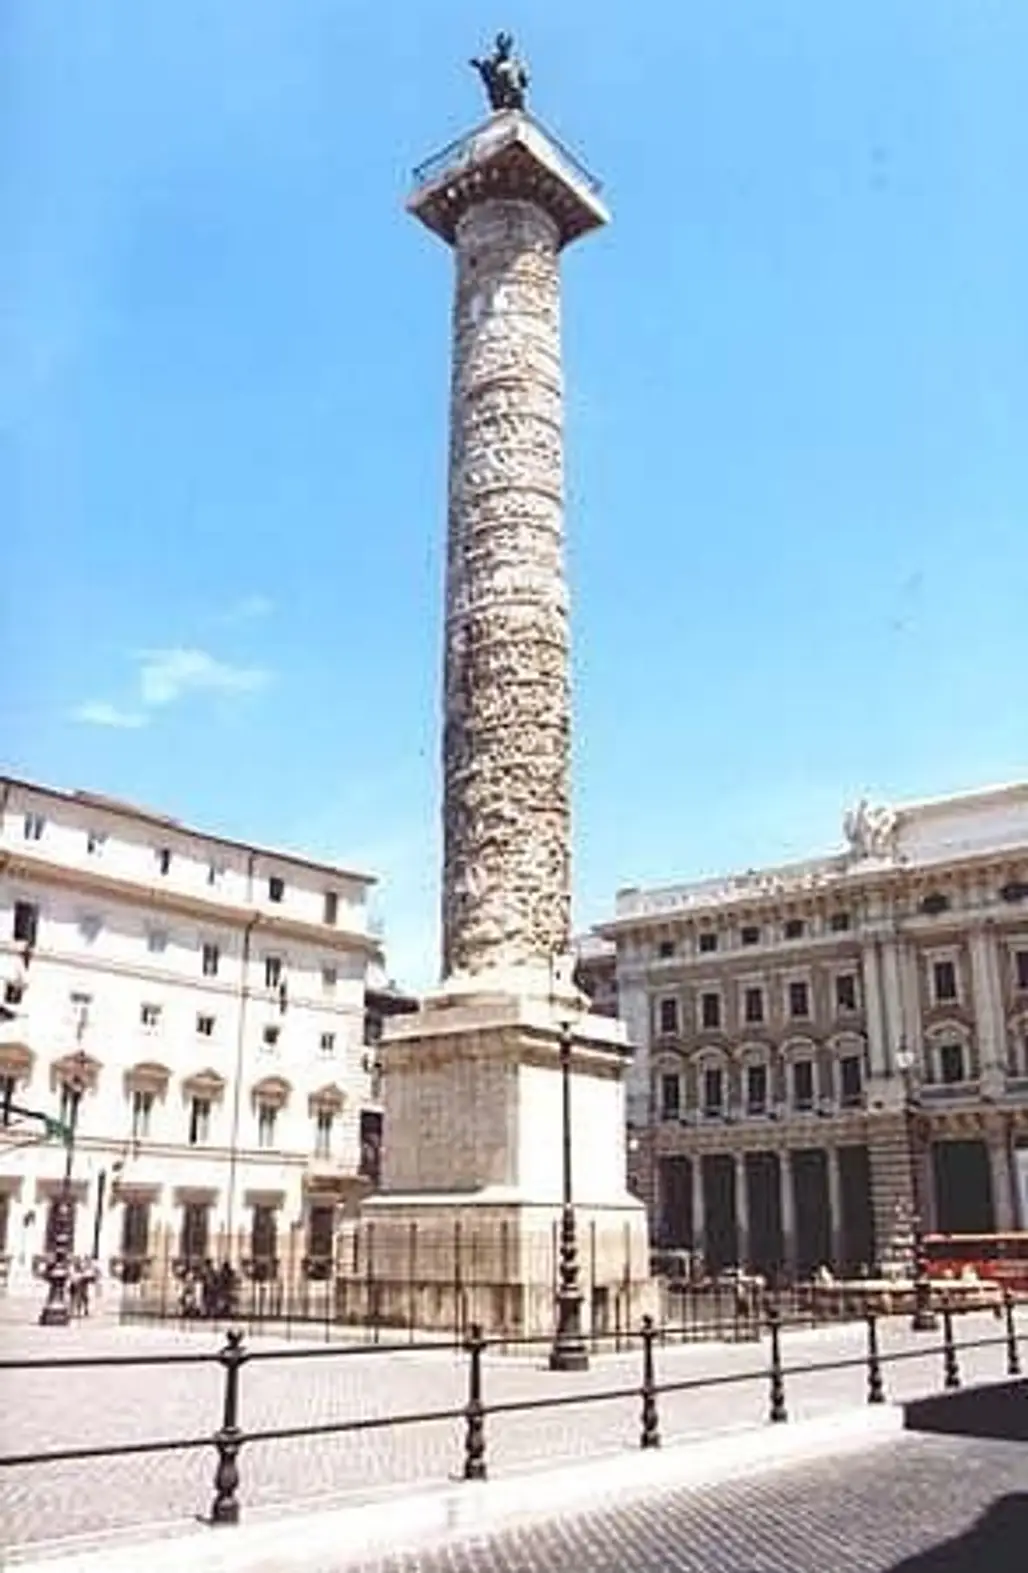 The Column of Marcus Aurelius